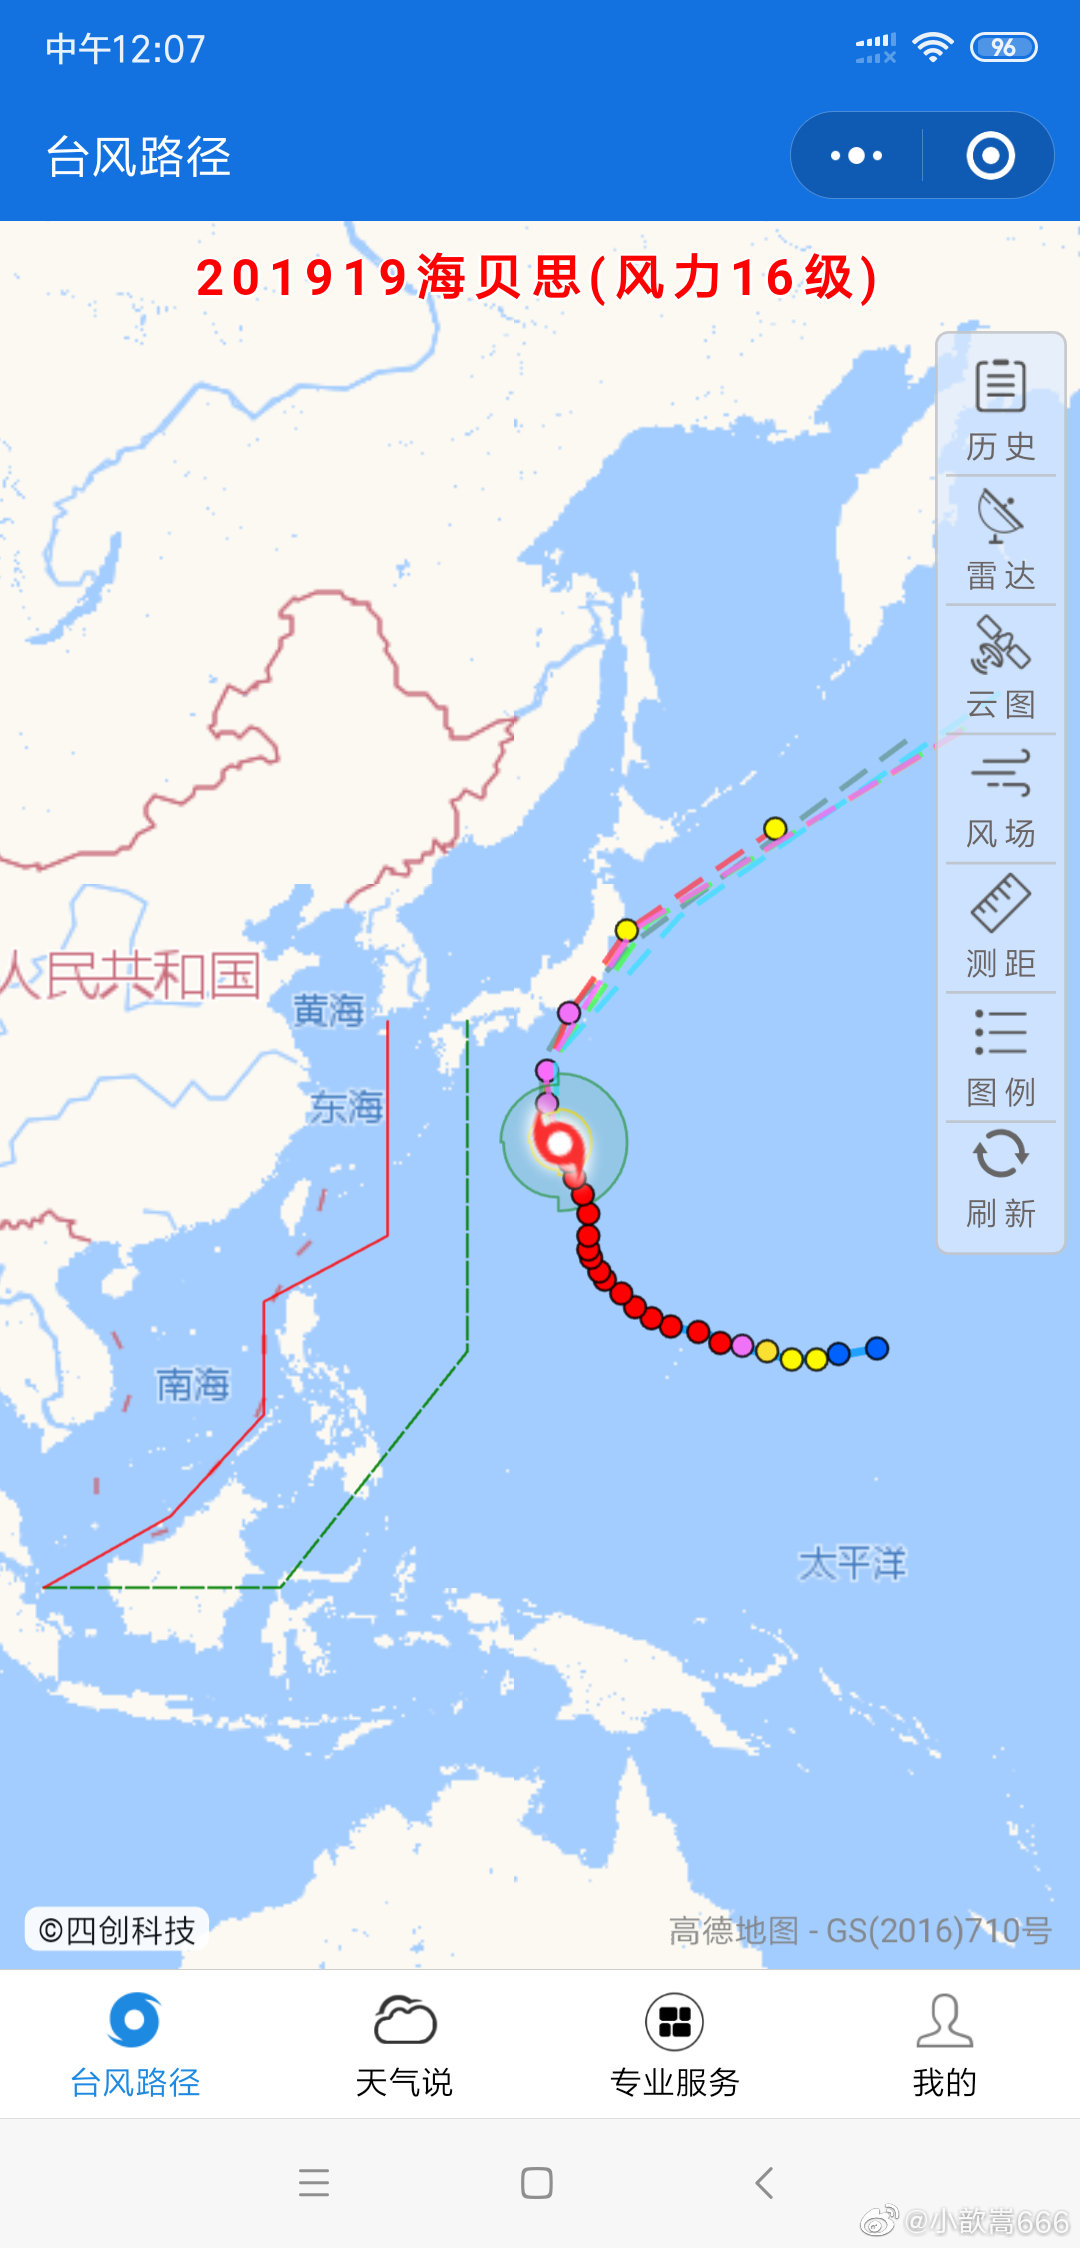 我国东部锋面雨带的移动示意图 - 中国地理地图 - 地理教师网